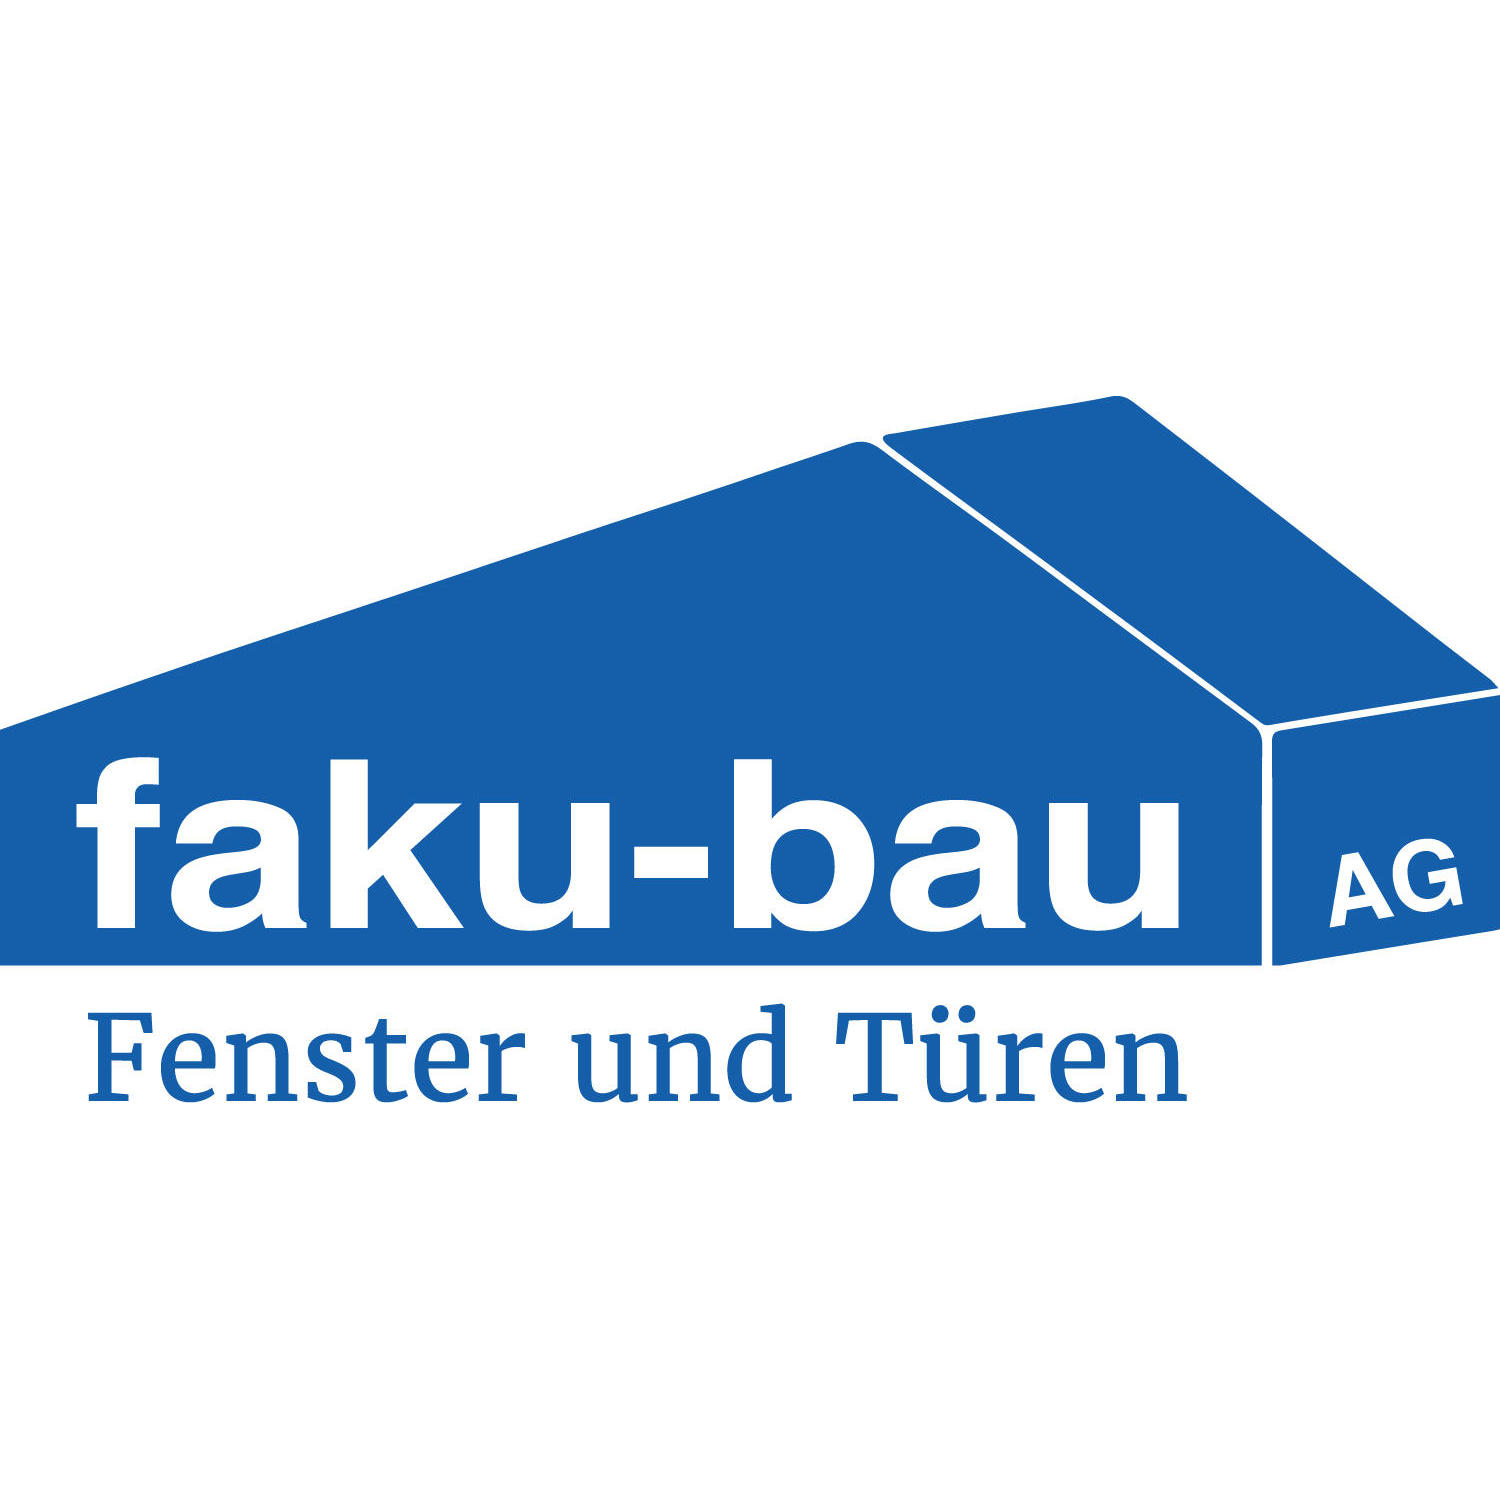 faku-bau AG Logo